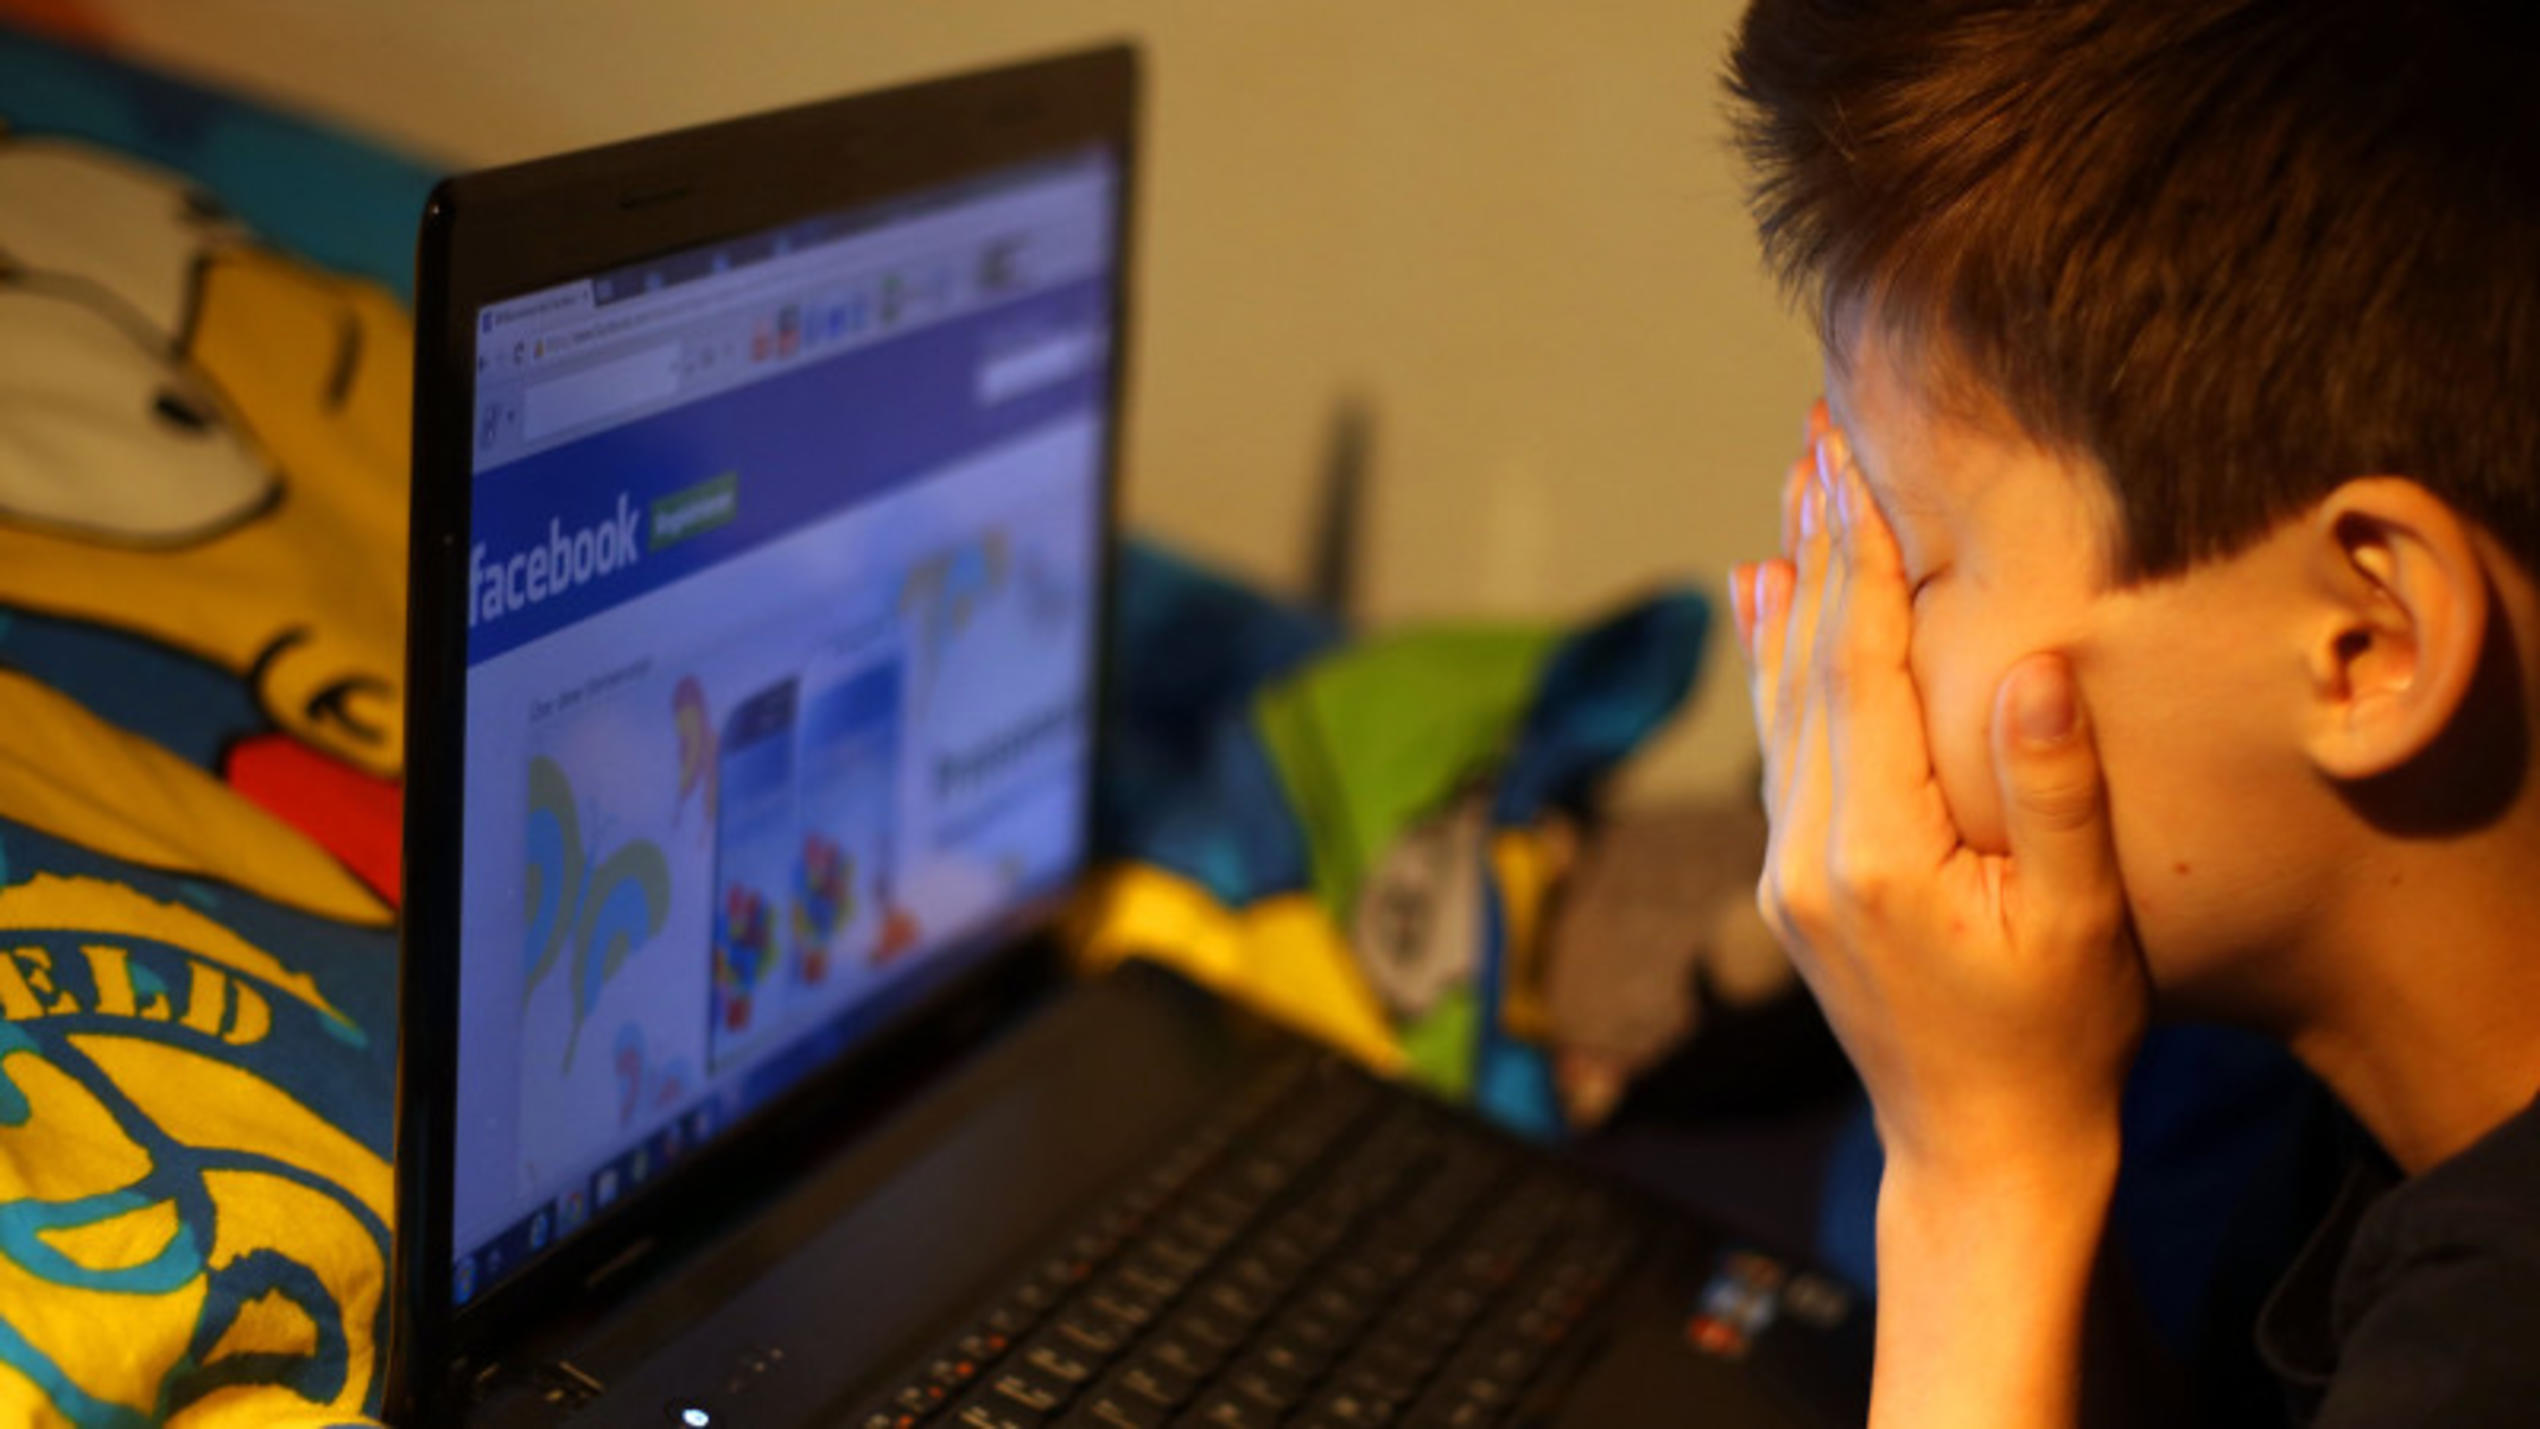 Illustration - Ein Junge reibt sich am 15.05.2013 in Leichlingen (Nordrhein-Westfalen) vor seinem Laptop beim betrachten der Facebook Seite die Augen. Eine umfangreiche Studie zum Thema Mobbing unter Kindern und Jugendlichen in Internet und sozialen 